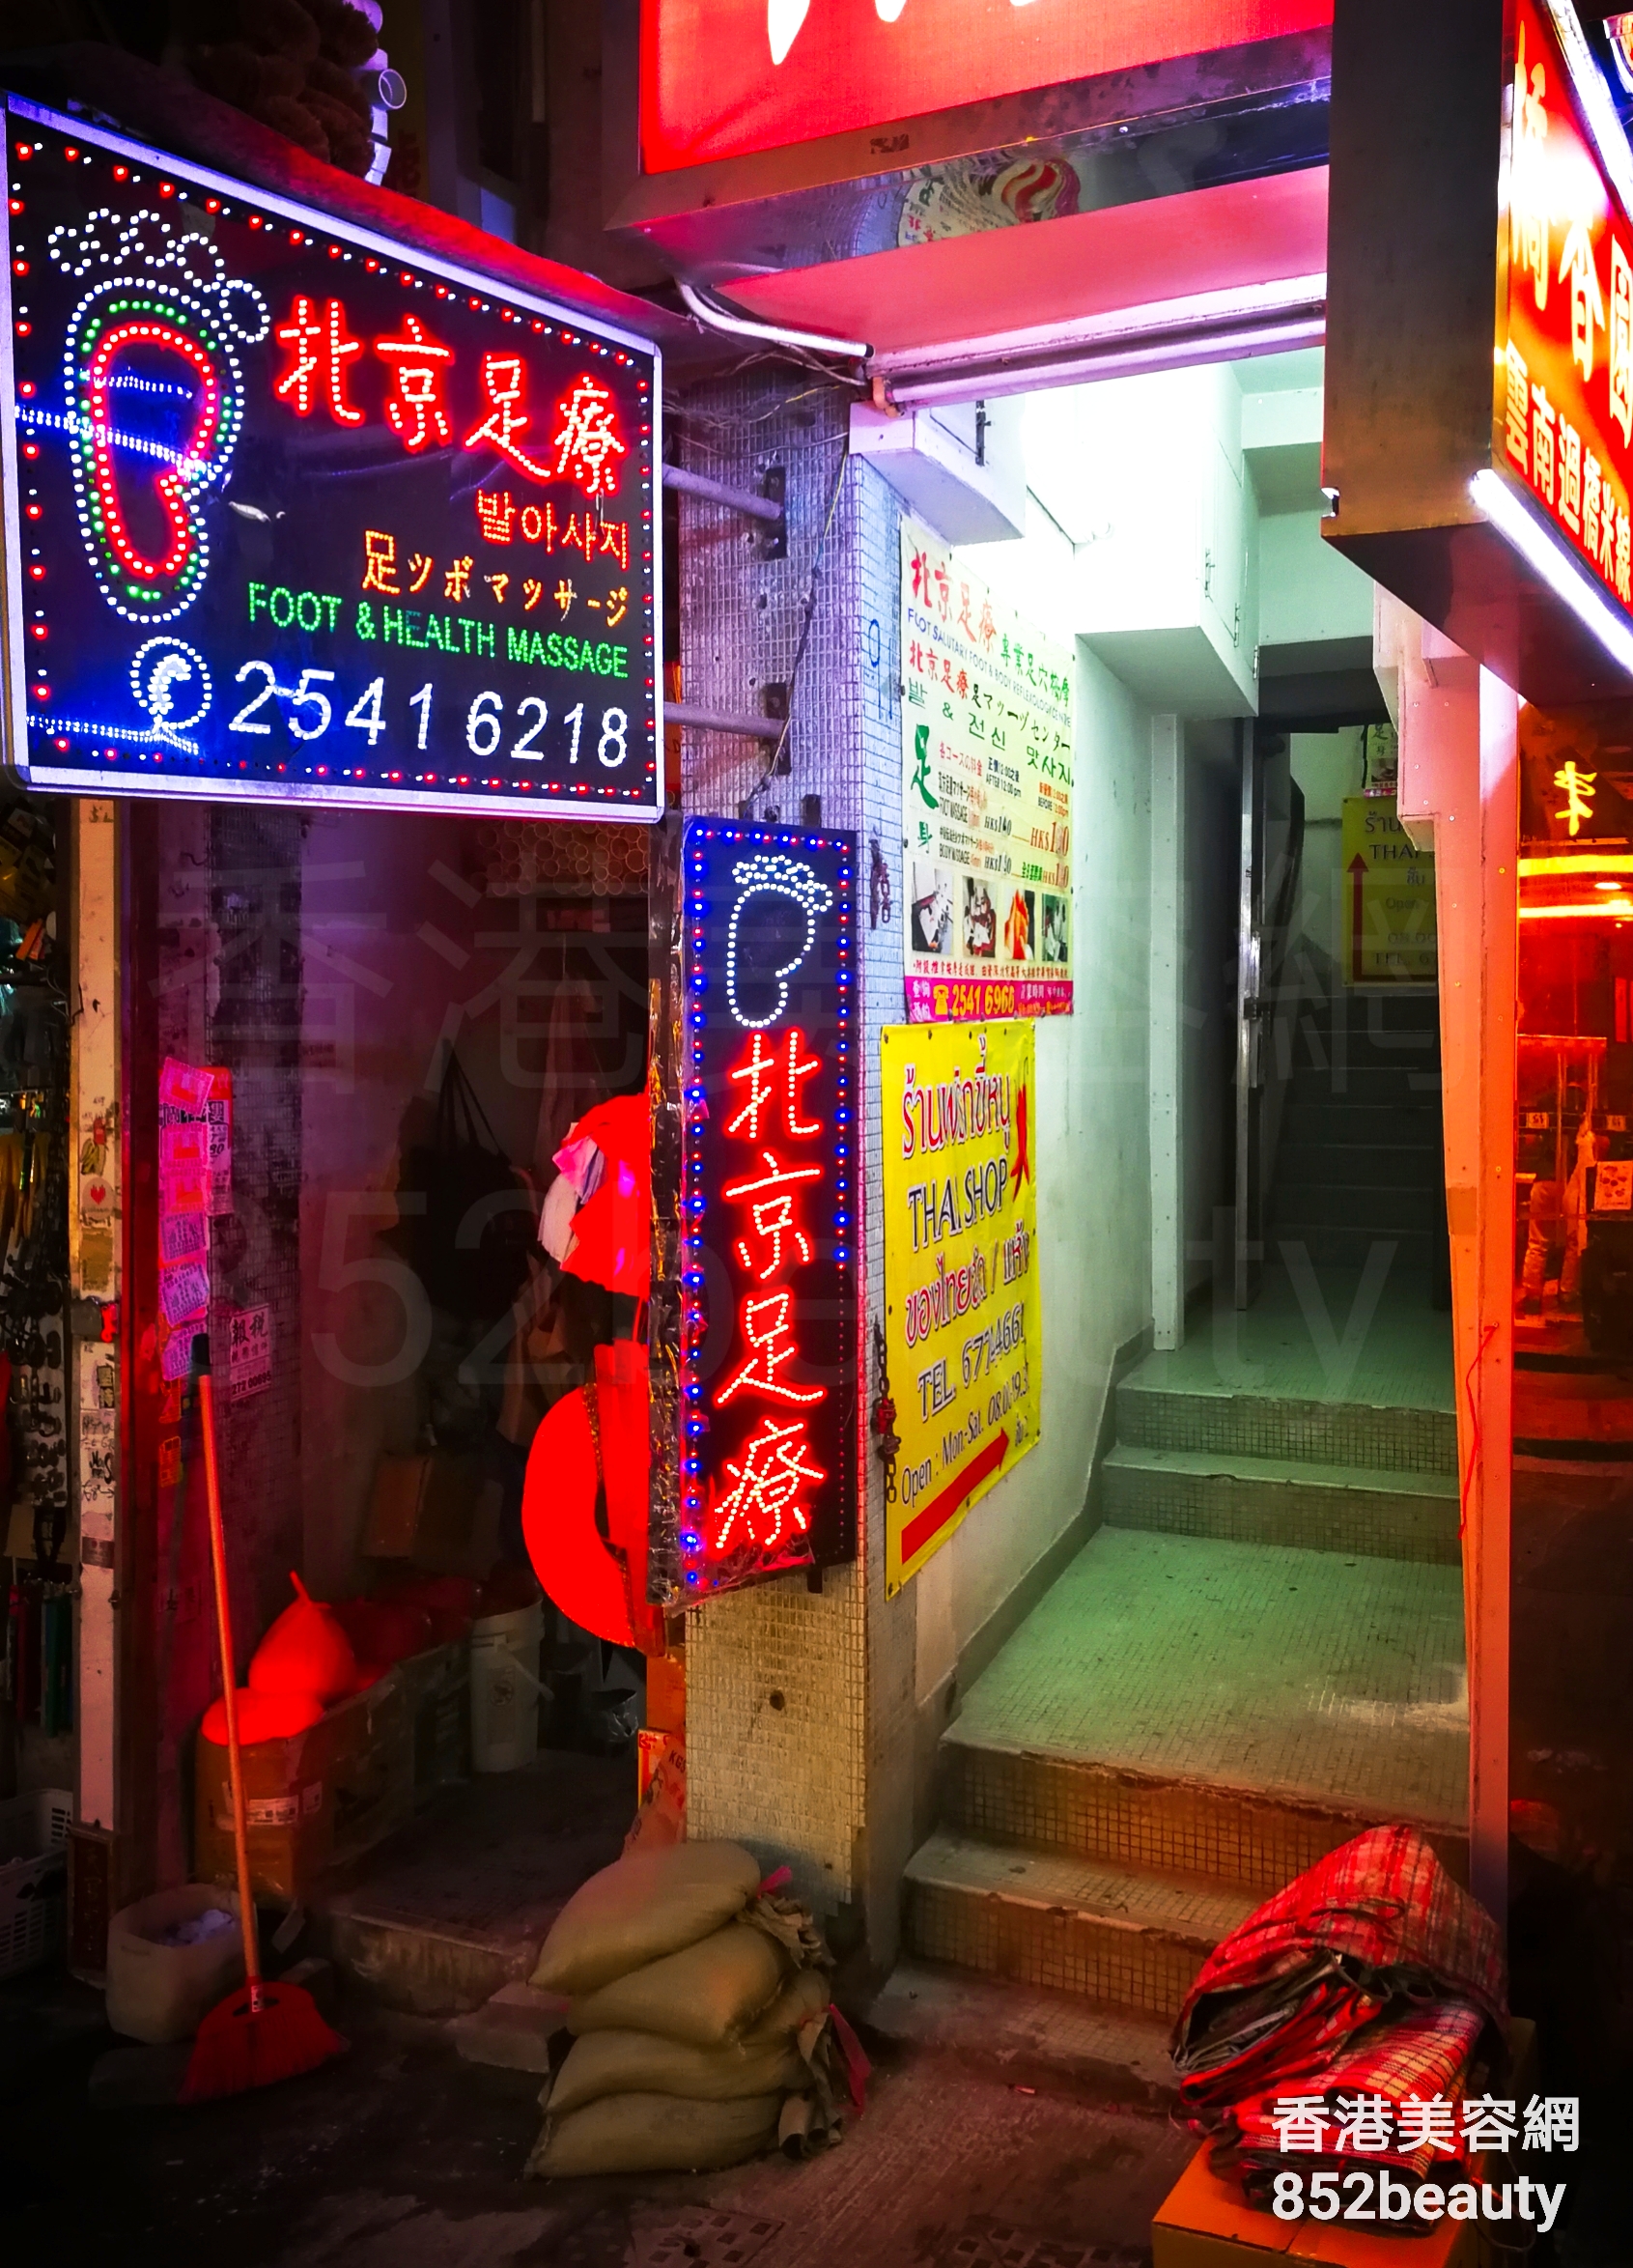 美容院: 北京足療